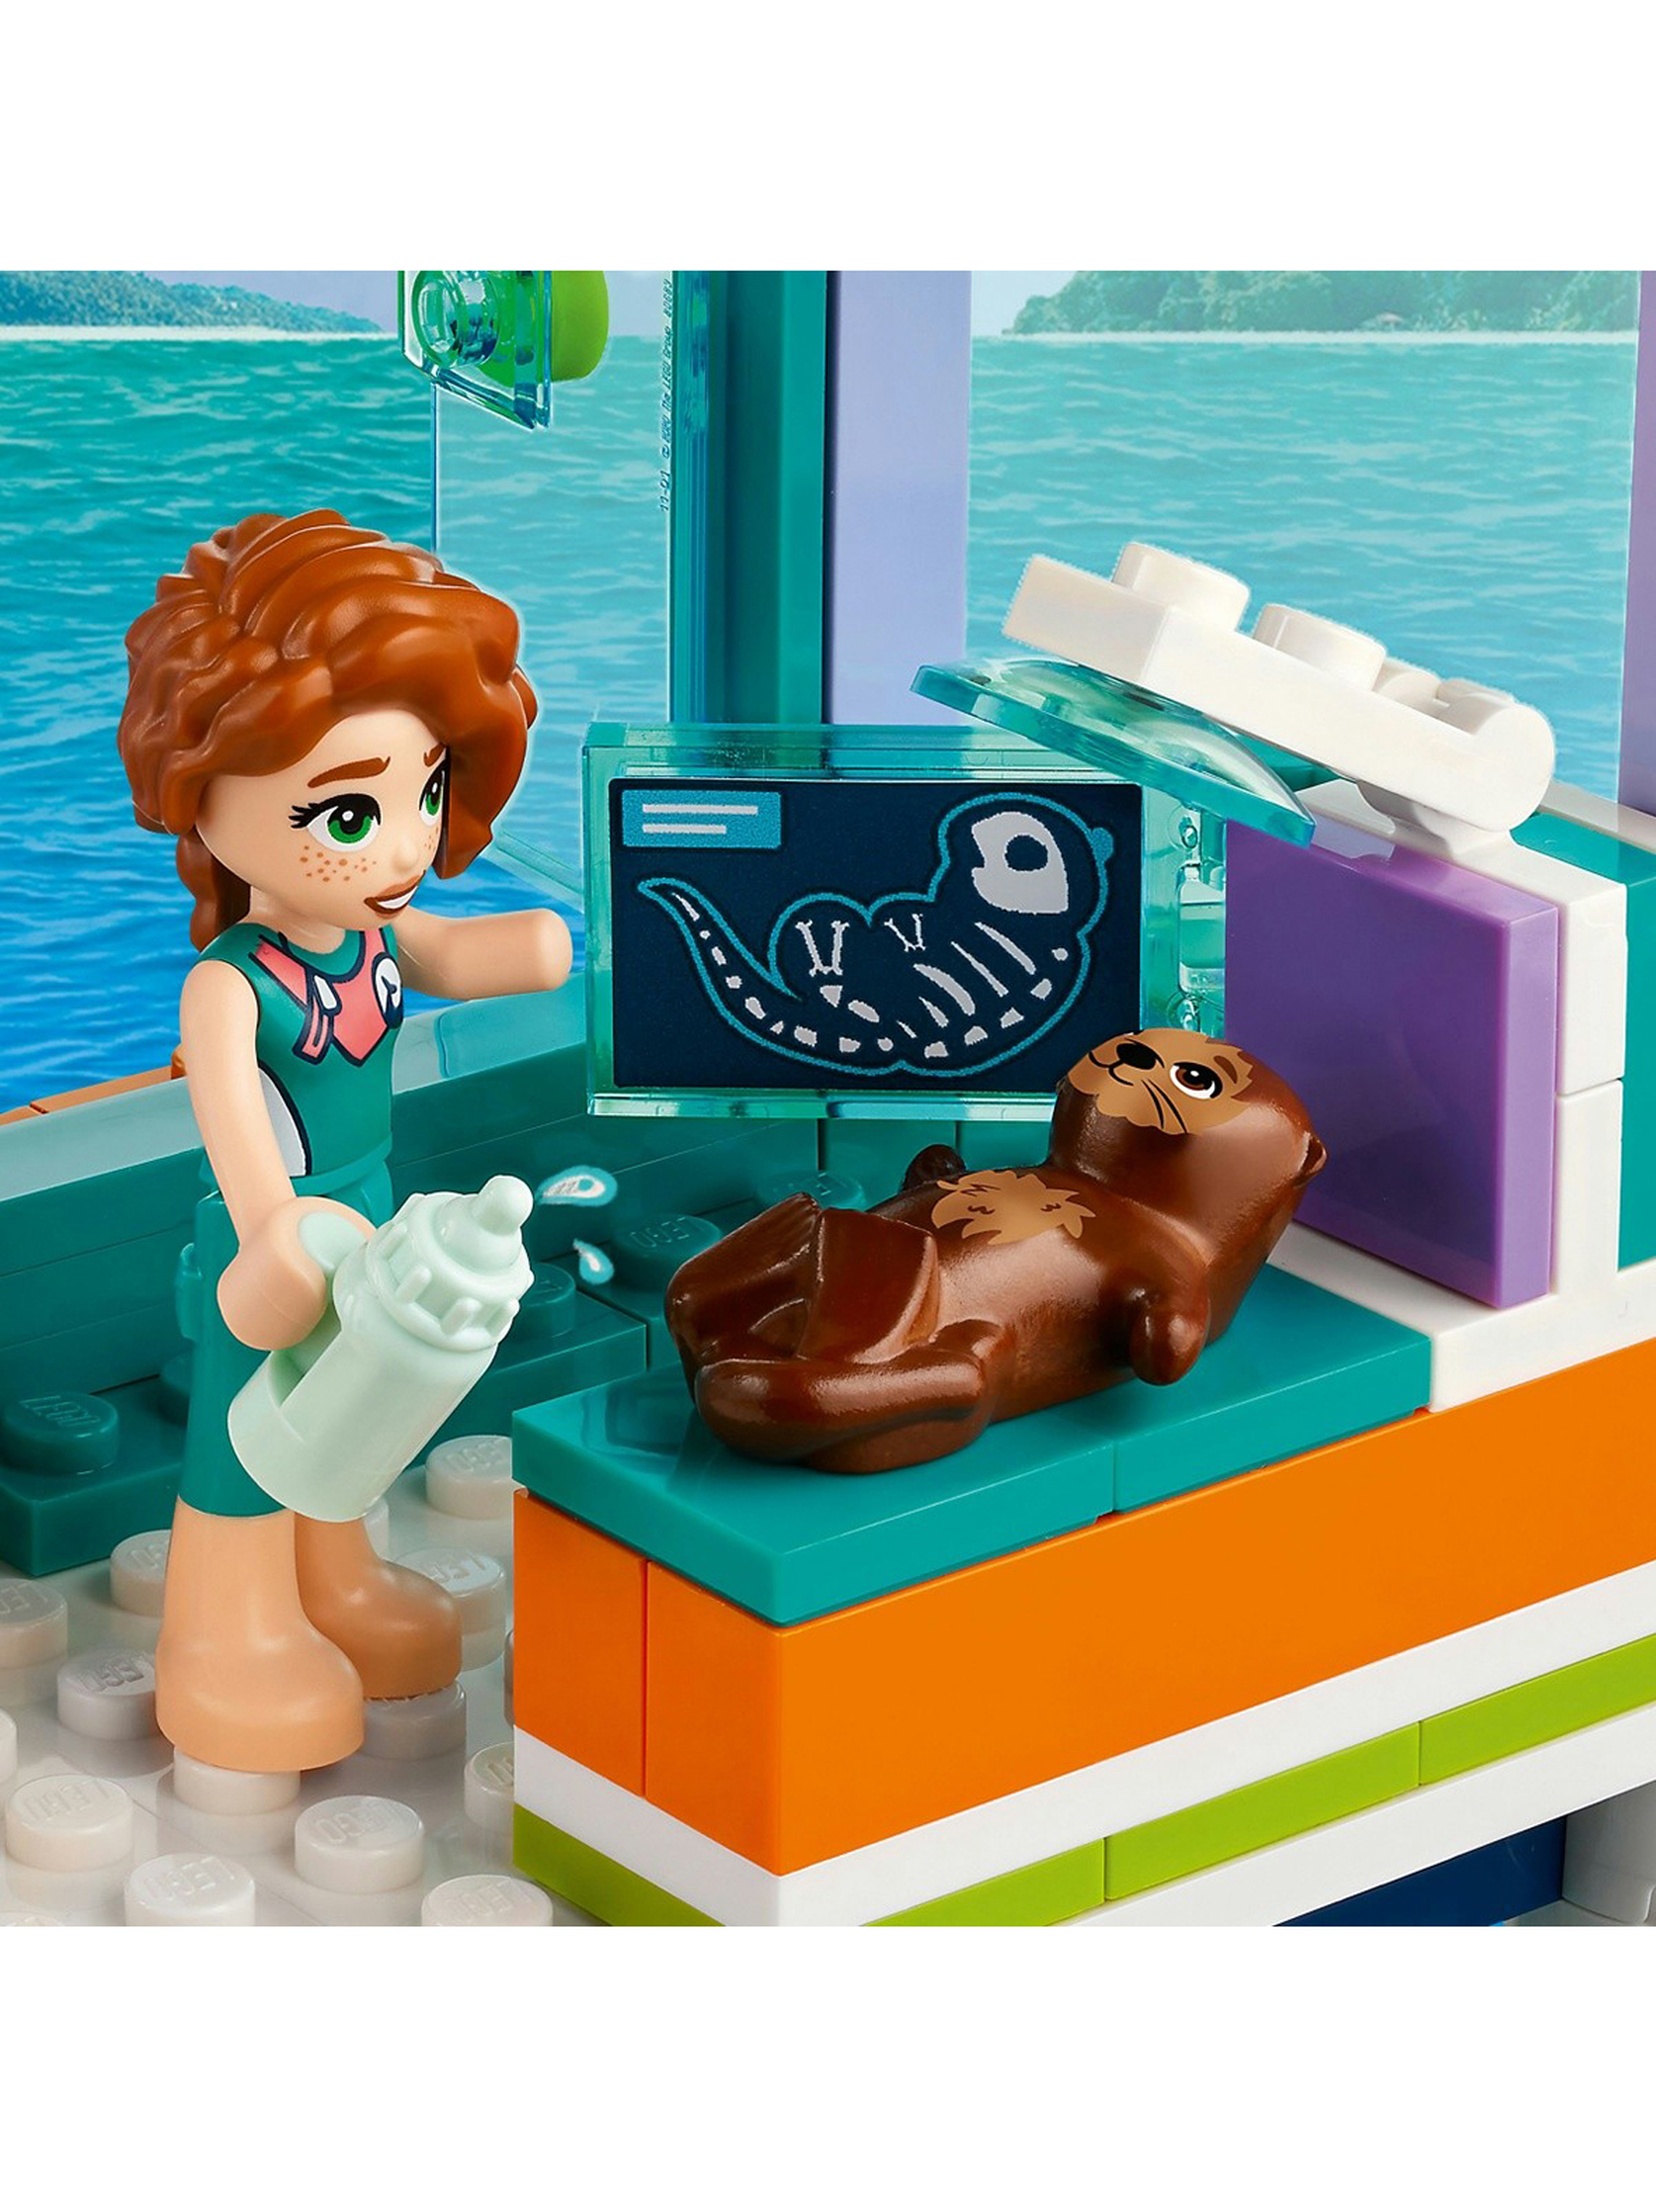 Klocki LEGO Friends 41736 Morskie centrum ratunkowe - 376 elementów, wiek 7 +